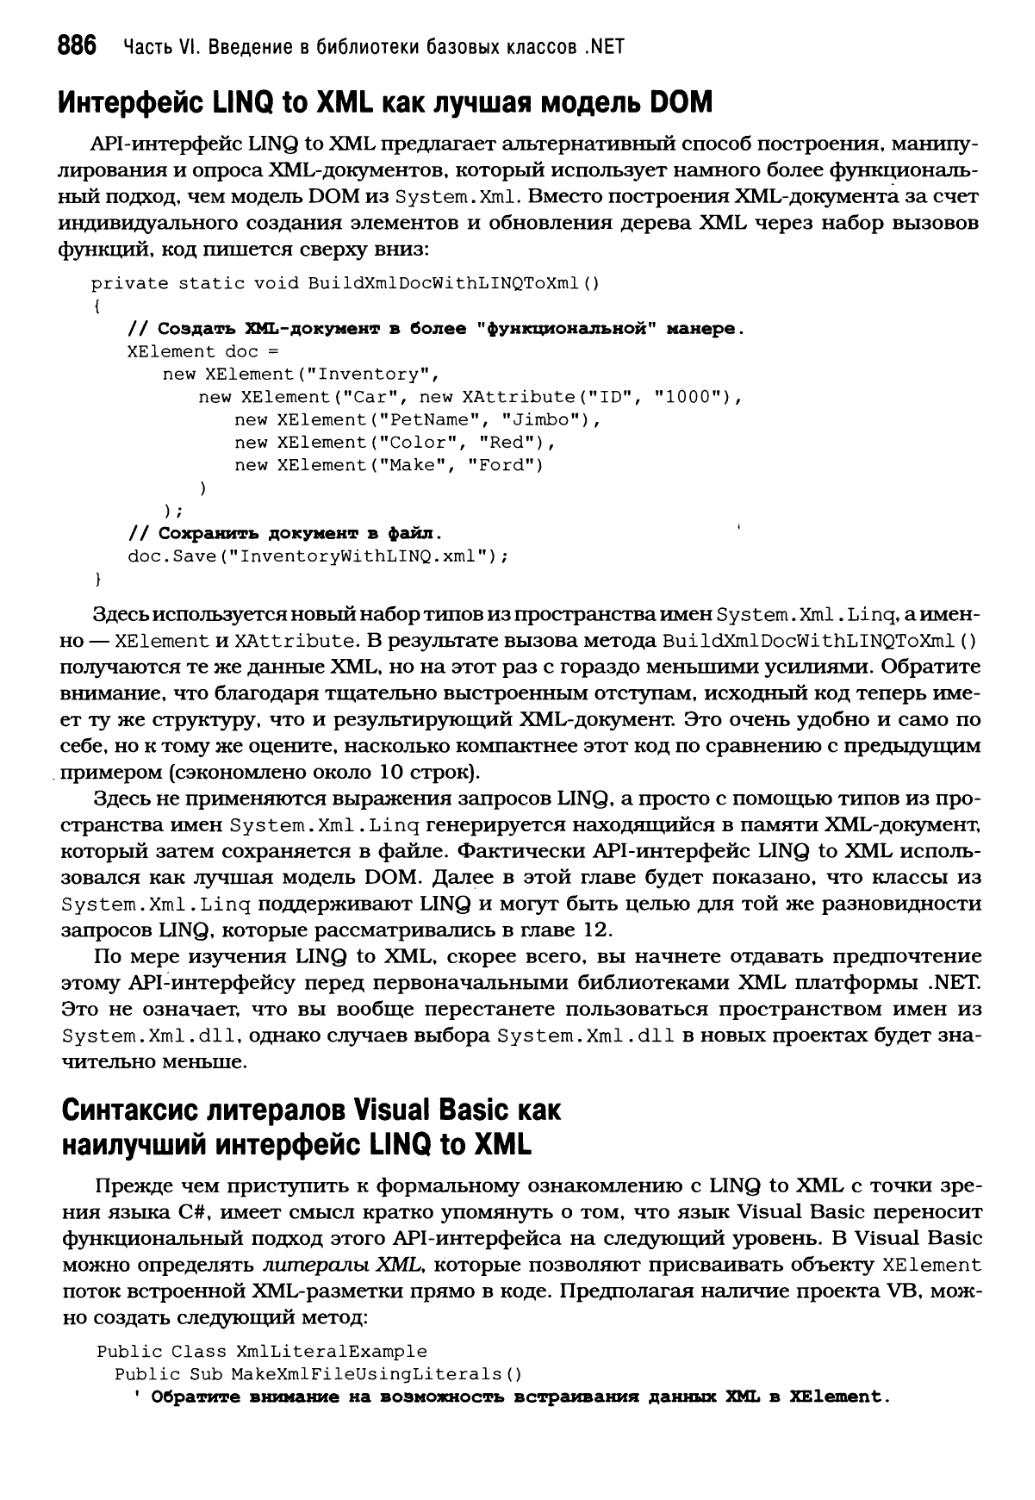 Синтаксис литералов Visual Basic как наилучший интерфейс LINQ to XML